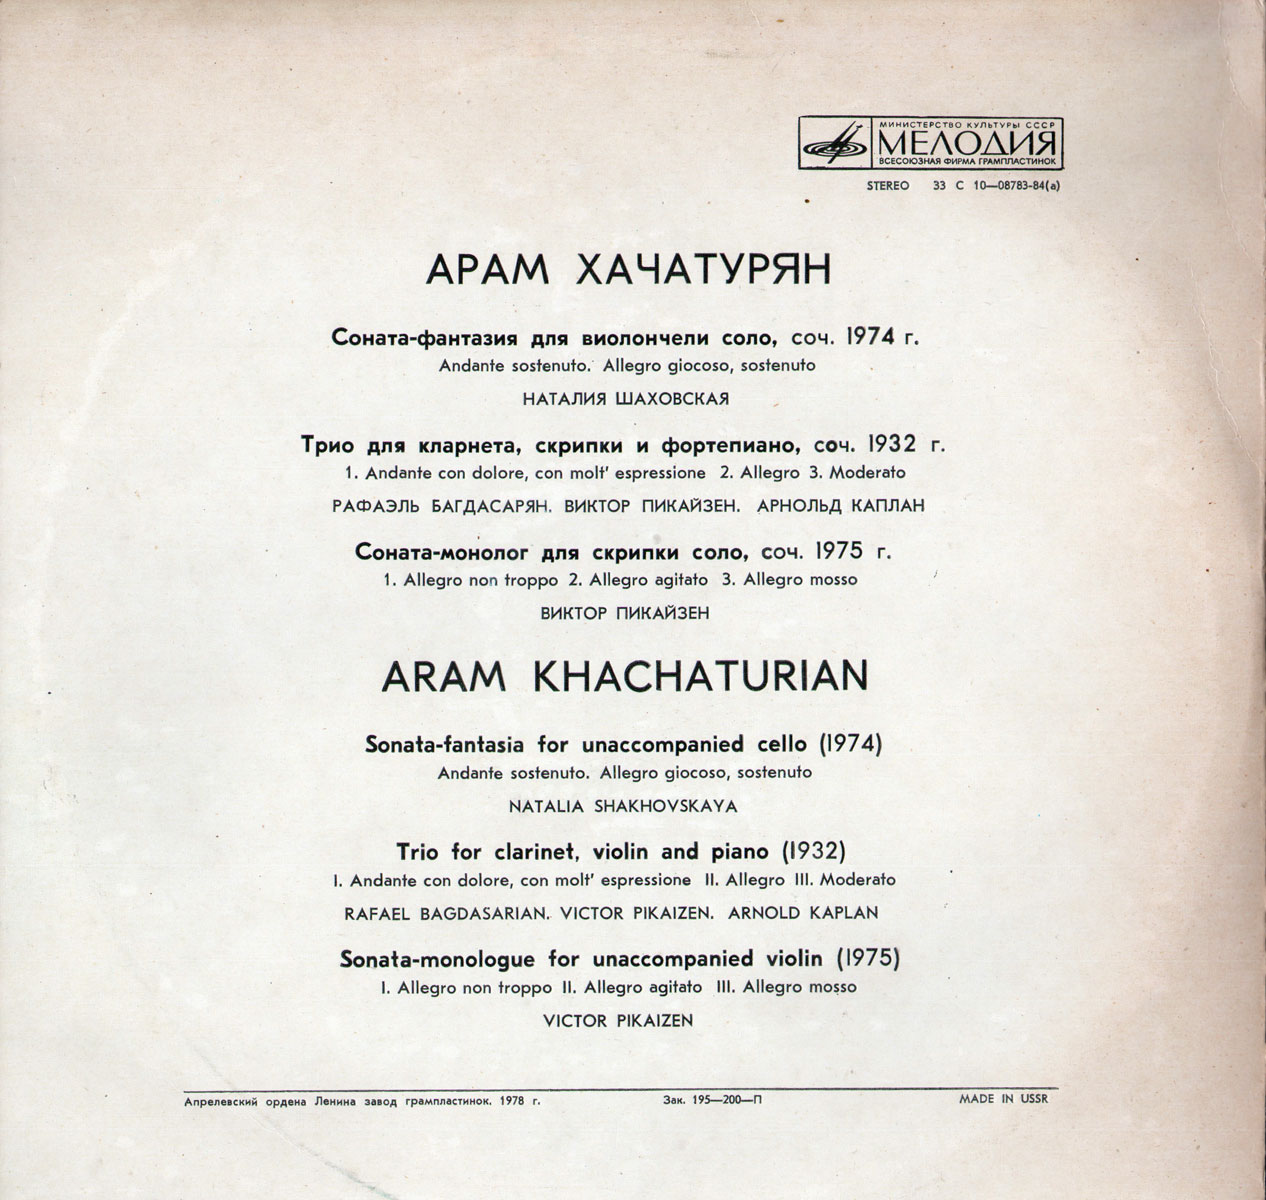 Арам Хачатурян. Инструментальная музыка